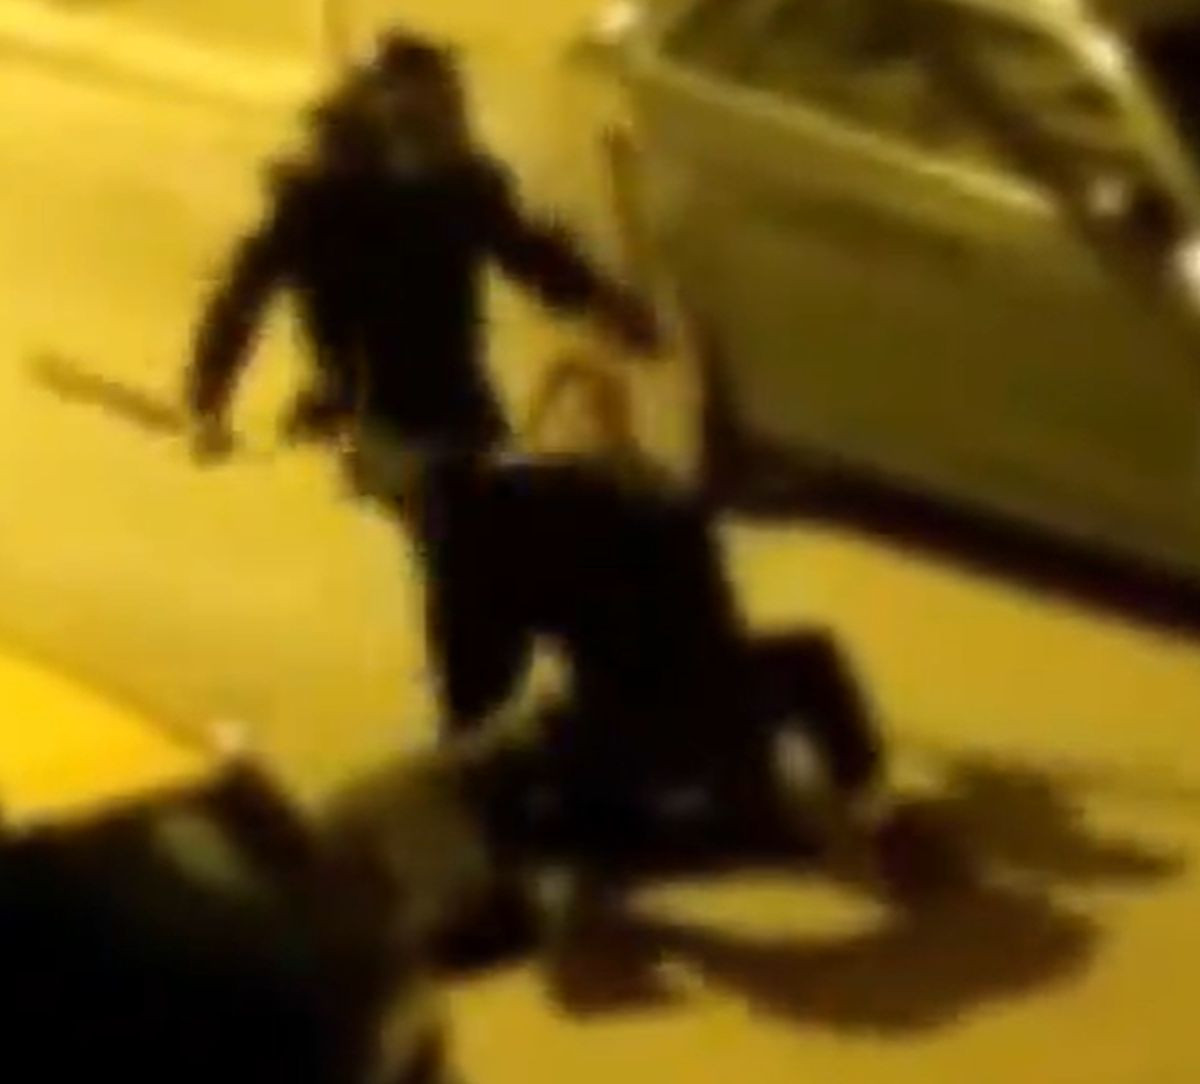 Torcida uz jasnu prijetnju objavila šokantan snimak kako policajci cipelare vezanog čovjeka na podu